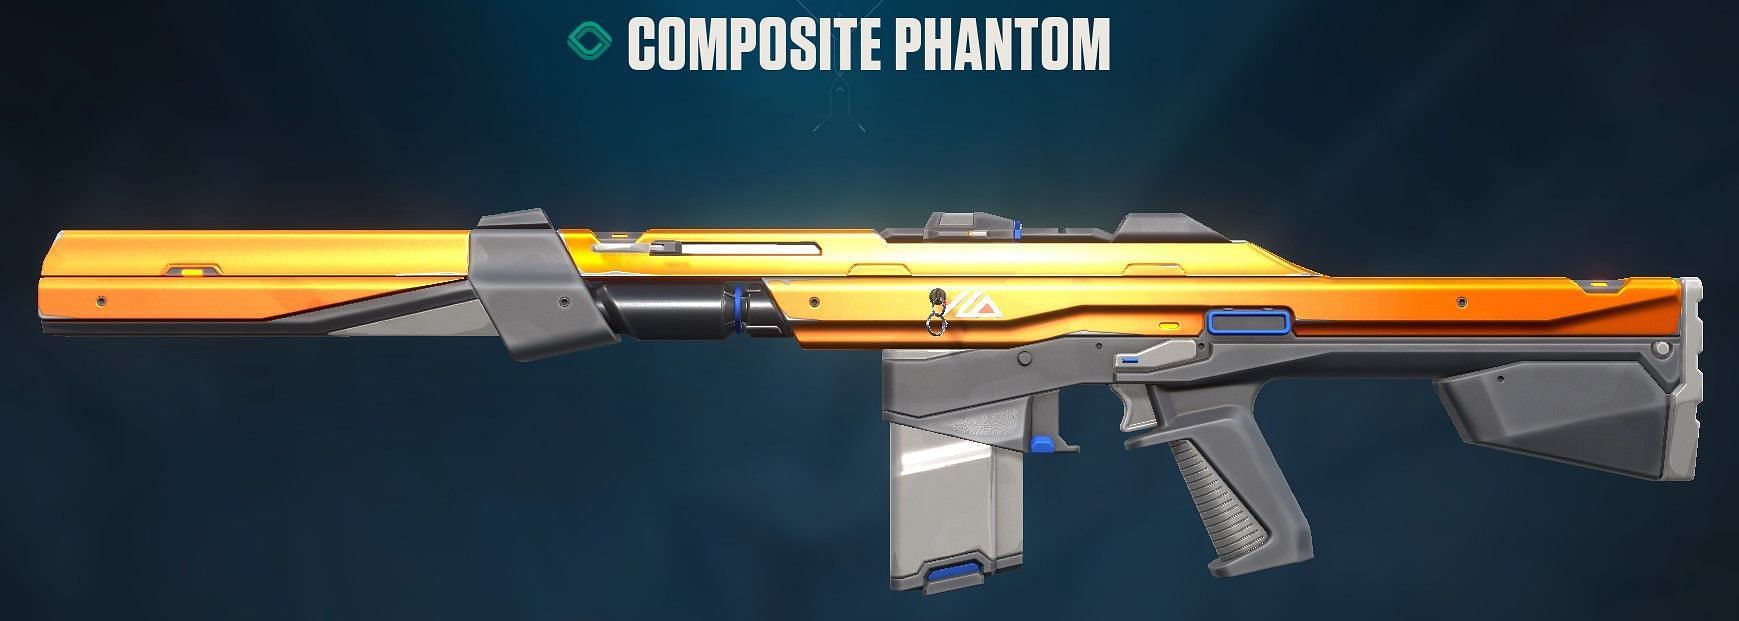 Composite Phantom (Image via Riot Games)